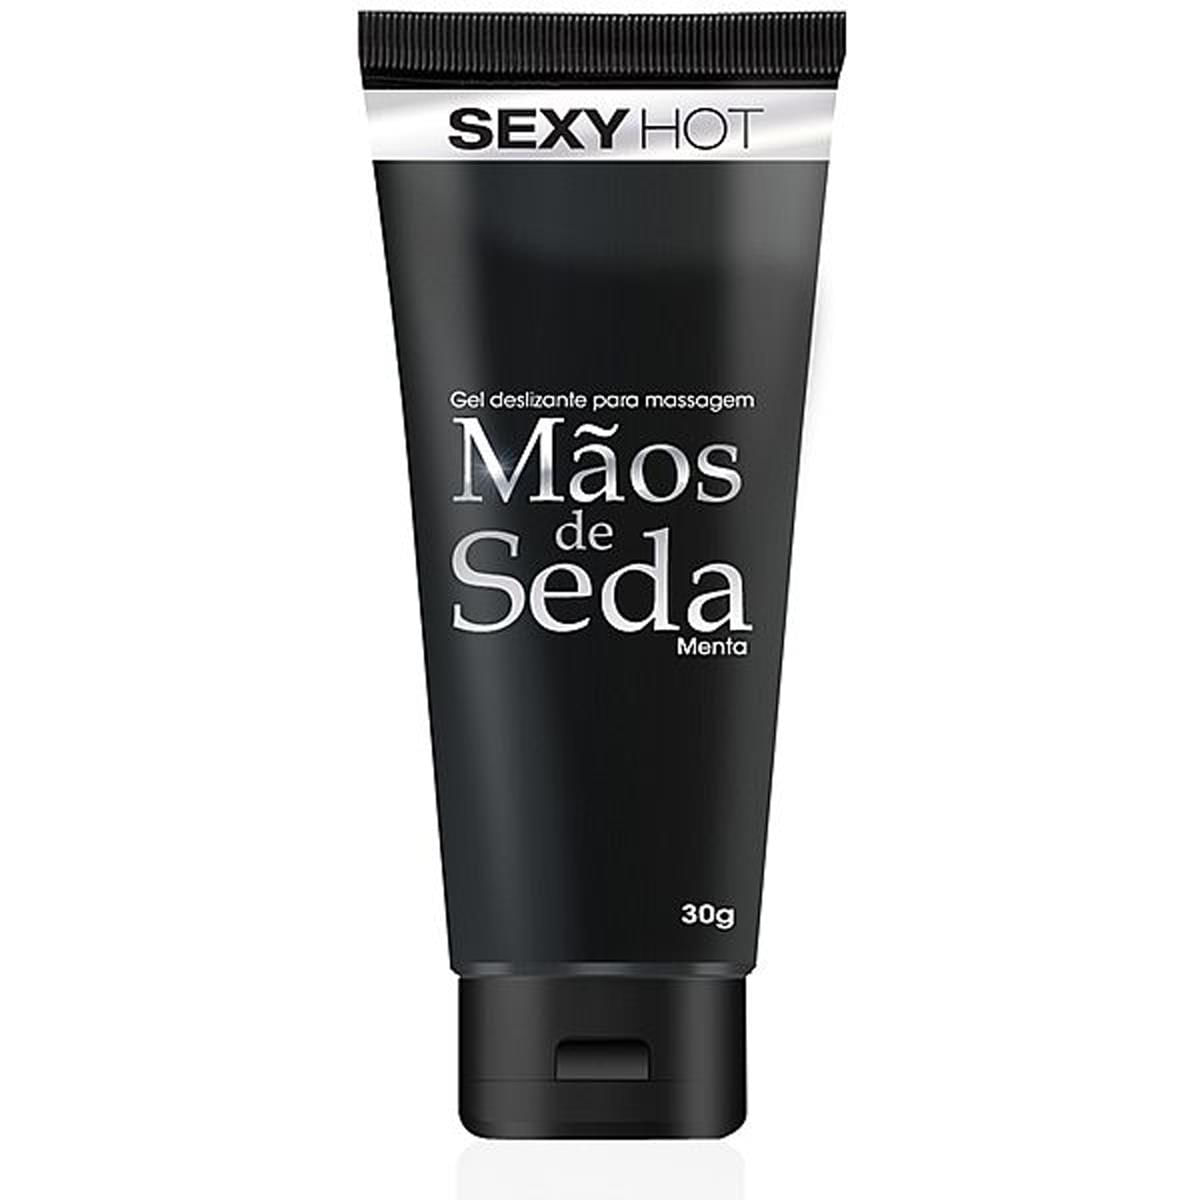 Mãos de Seda Gel Deslizante para Massagem Sexy Hot